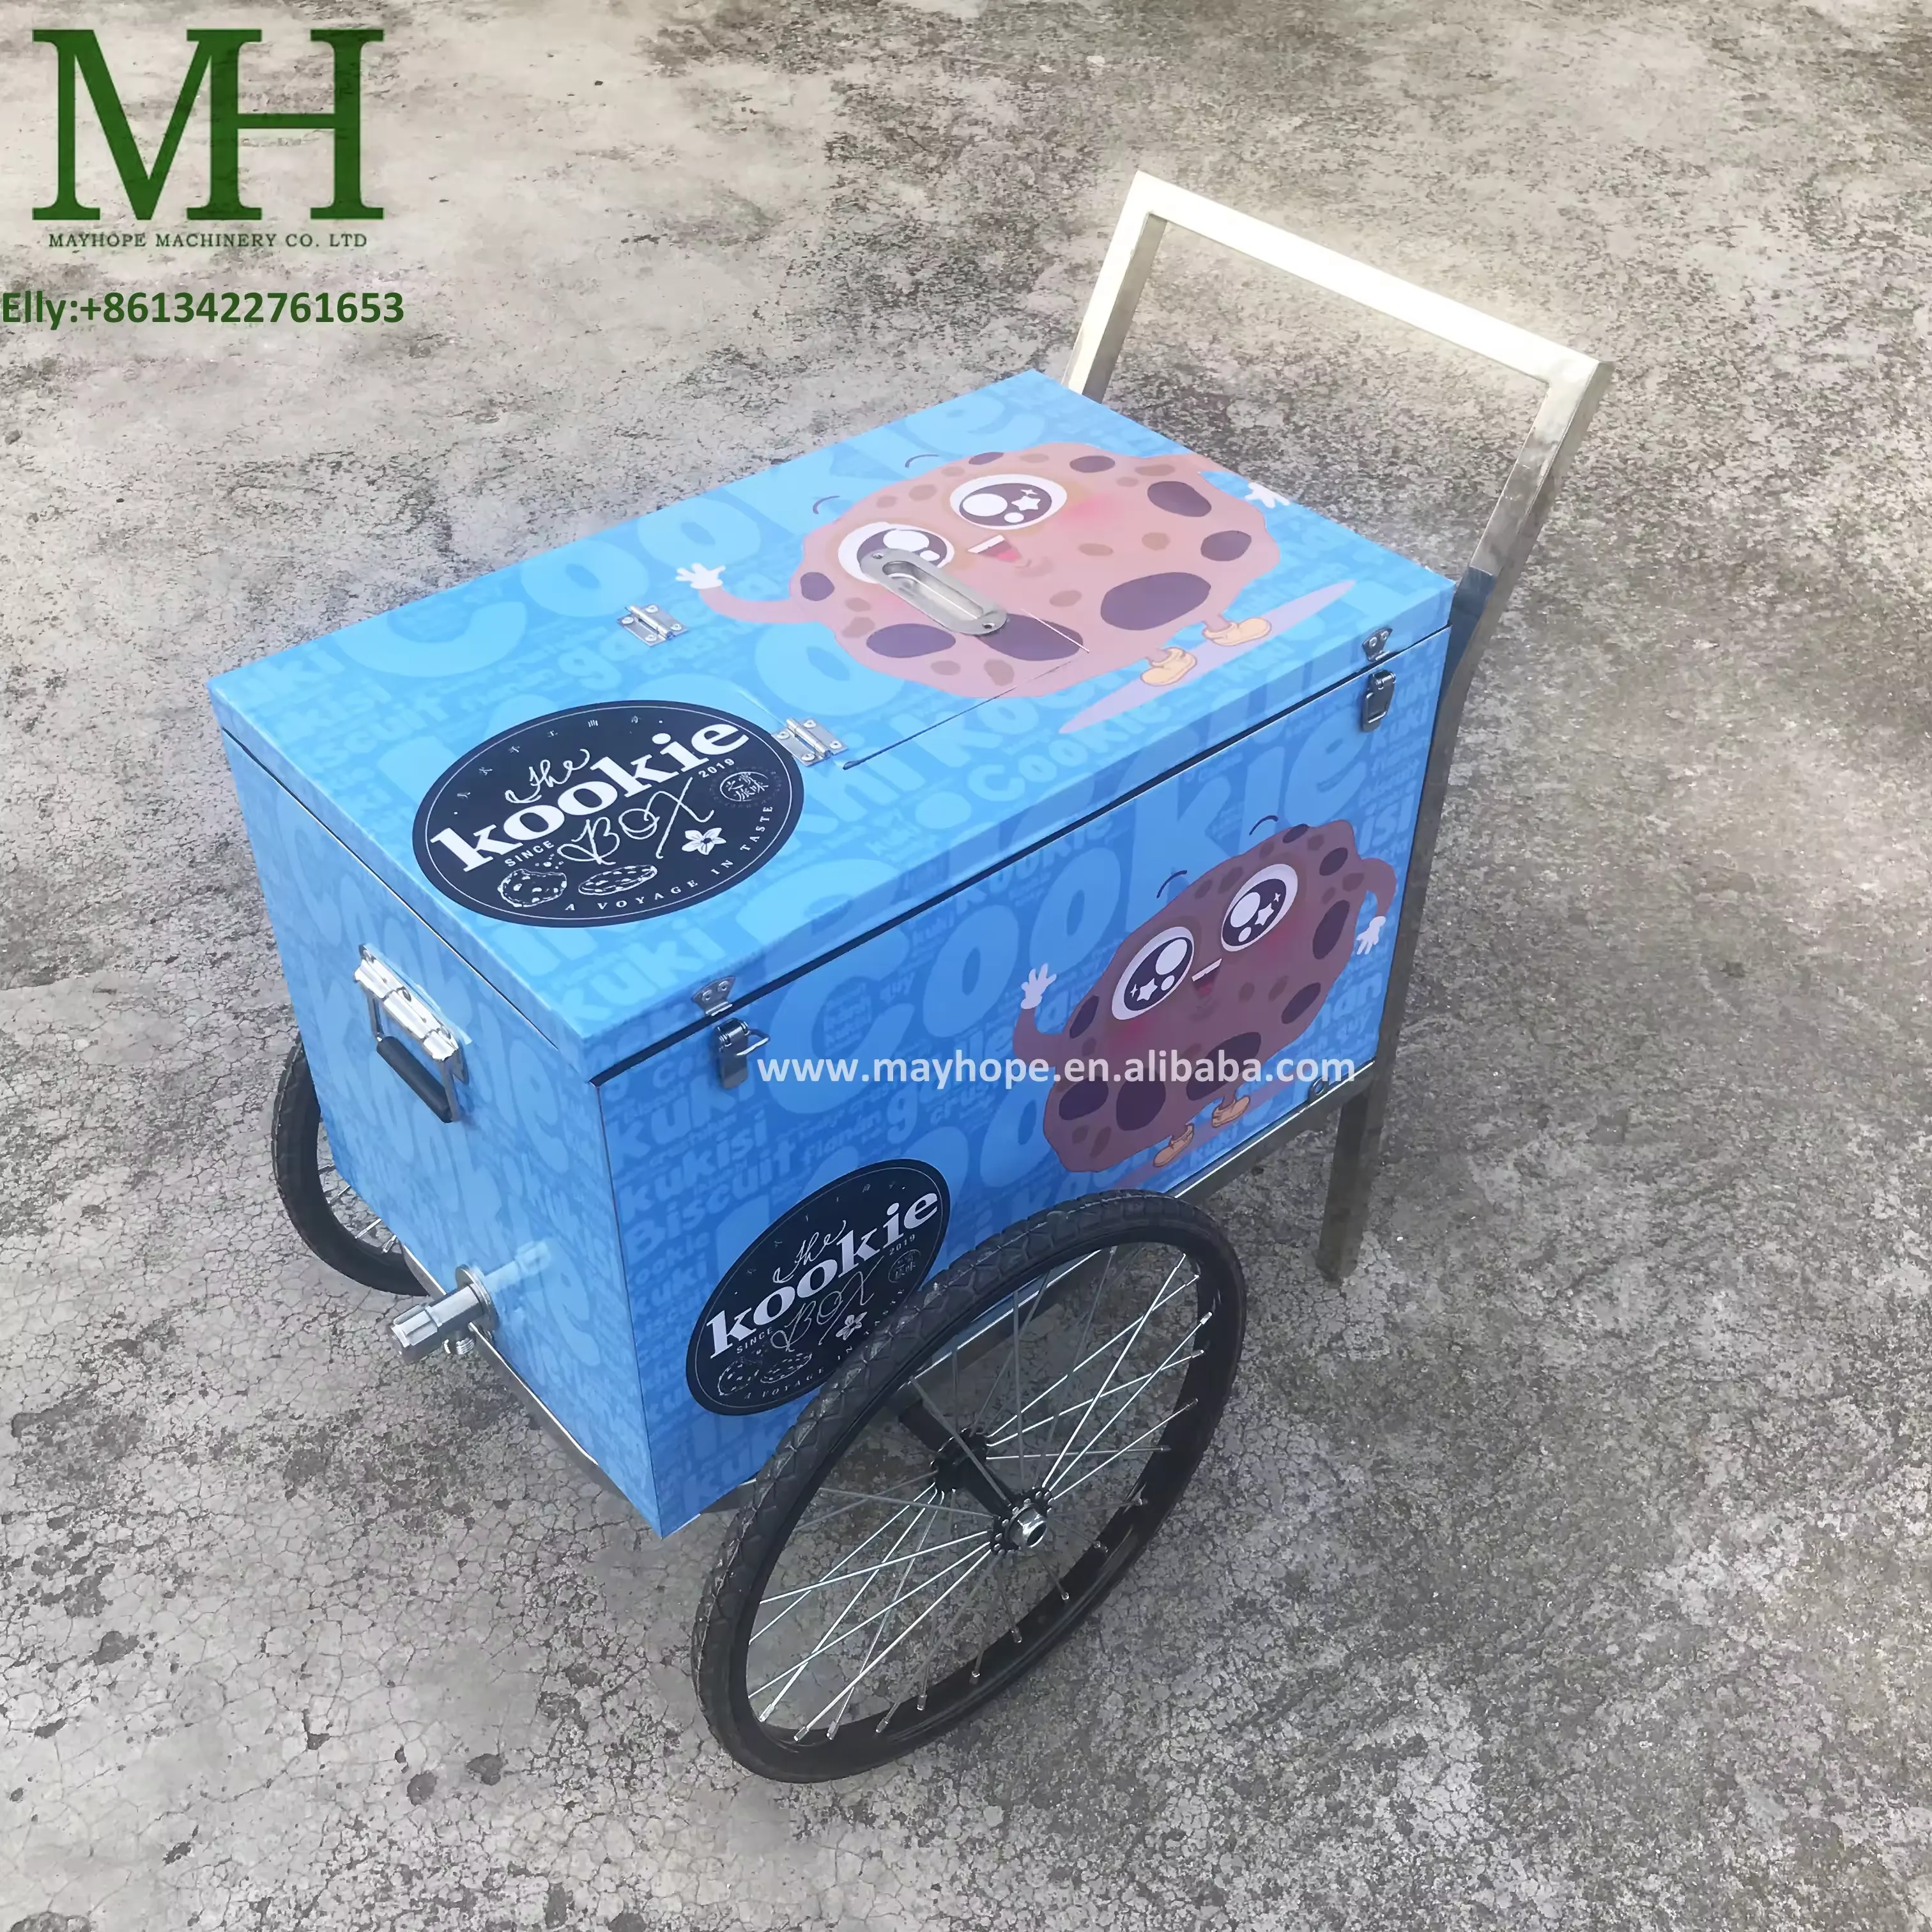 イタリアンジェラトバイクアイスクリームストリートモバイルプッシュアイスキャンデーショーケース冷凍庫屋外用自動販売カート